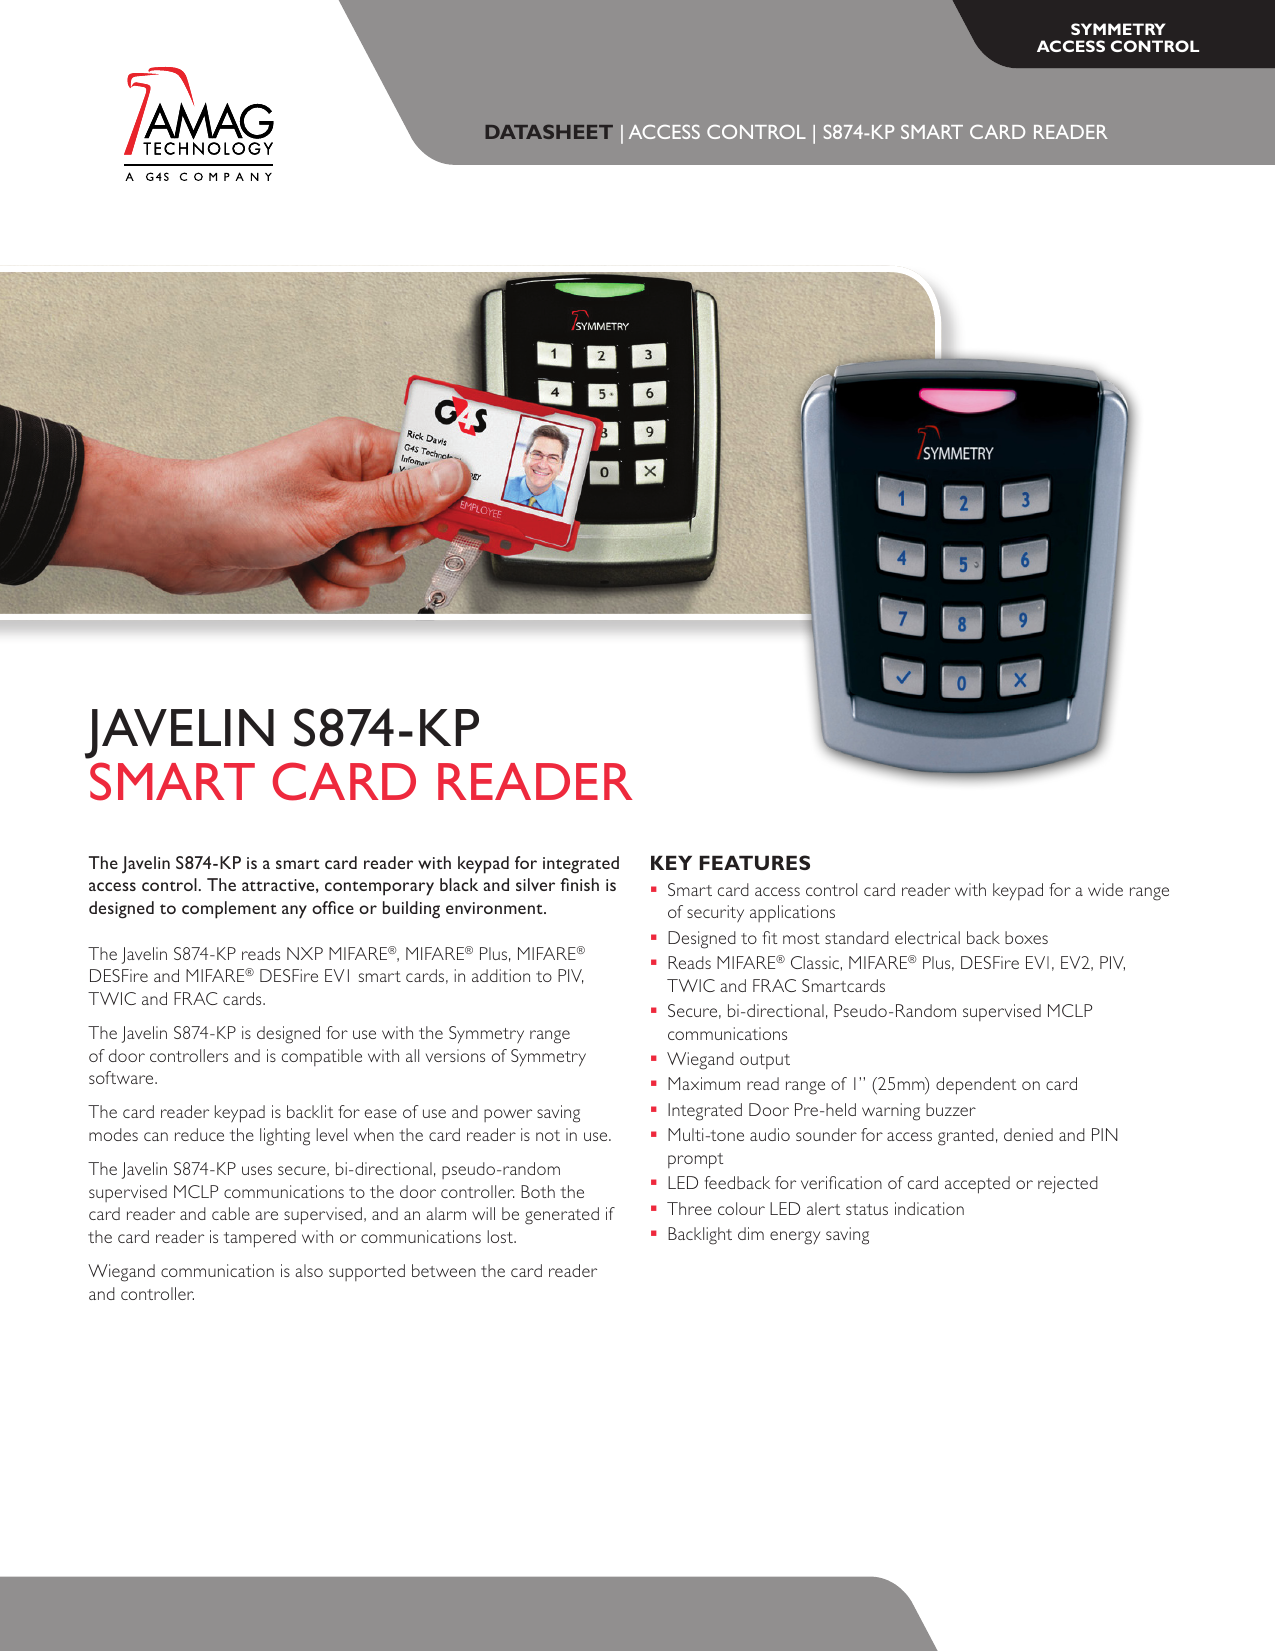 javelin s874-kp smart card reader 